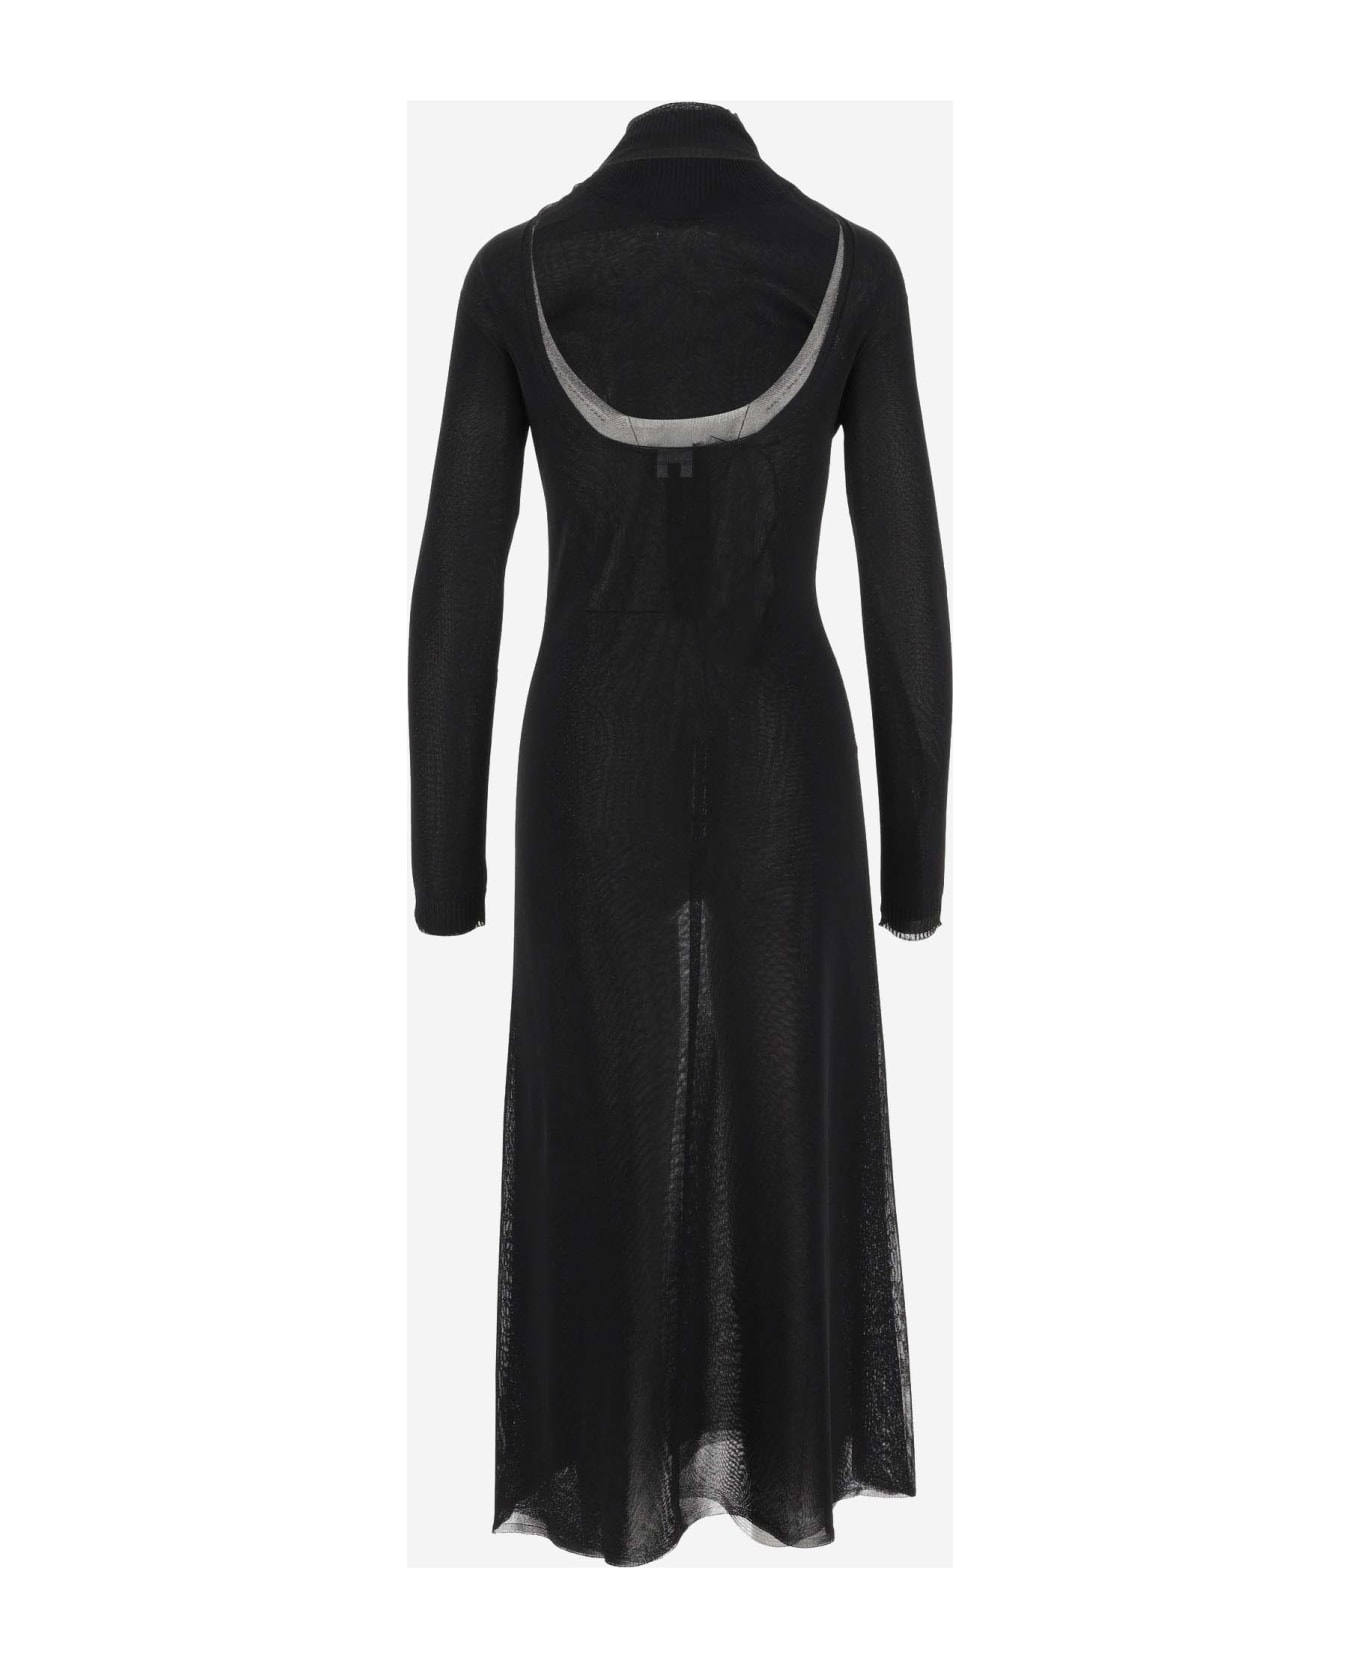 Giorgio Armani Brilliant Knit Longuette Dress - Black